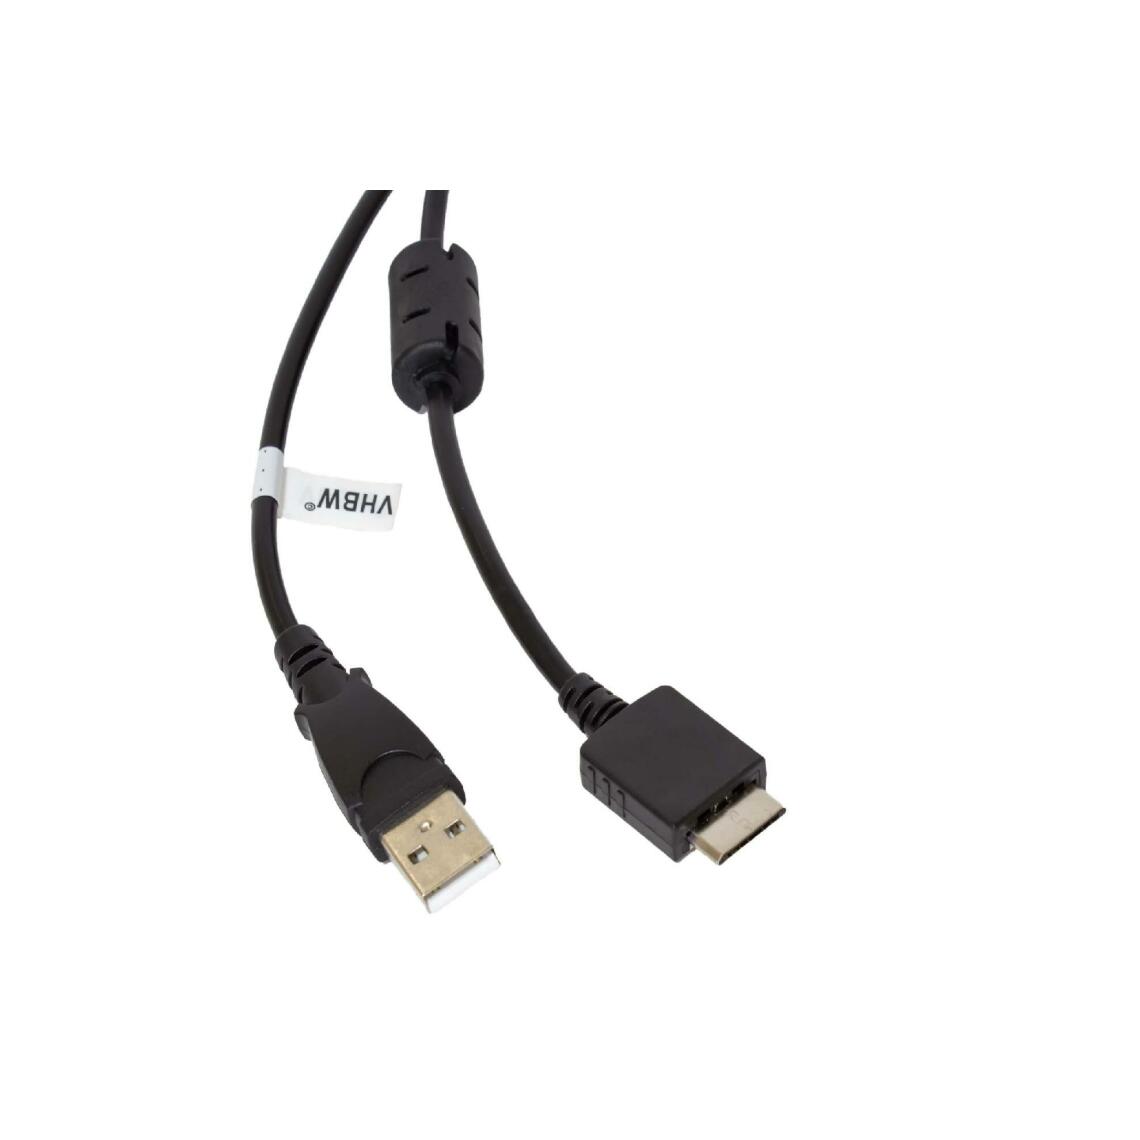 Vhbw - vhbw câble de données USB (type A sur lecteur MP3) câble de chargement compatible avec Sony Walkman NWZ-S615FSLV, NWZ-S616 lecteur MP3 - noir, 150cm - Alimentation modulaire